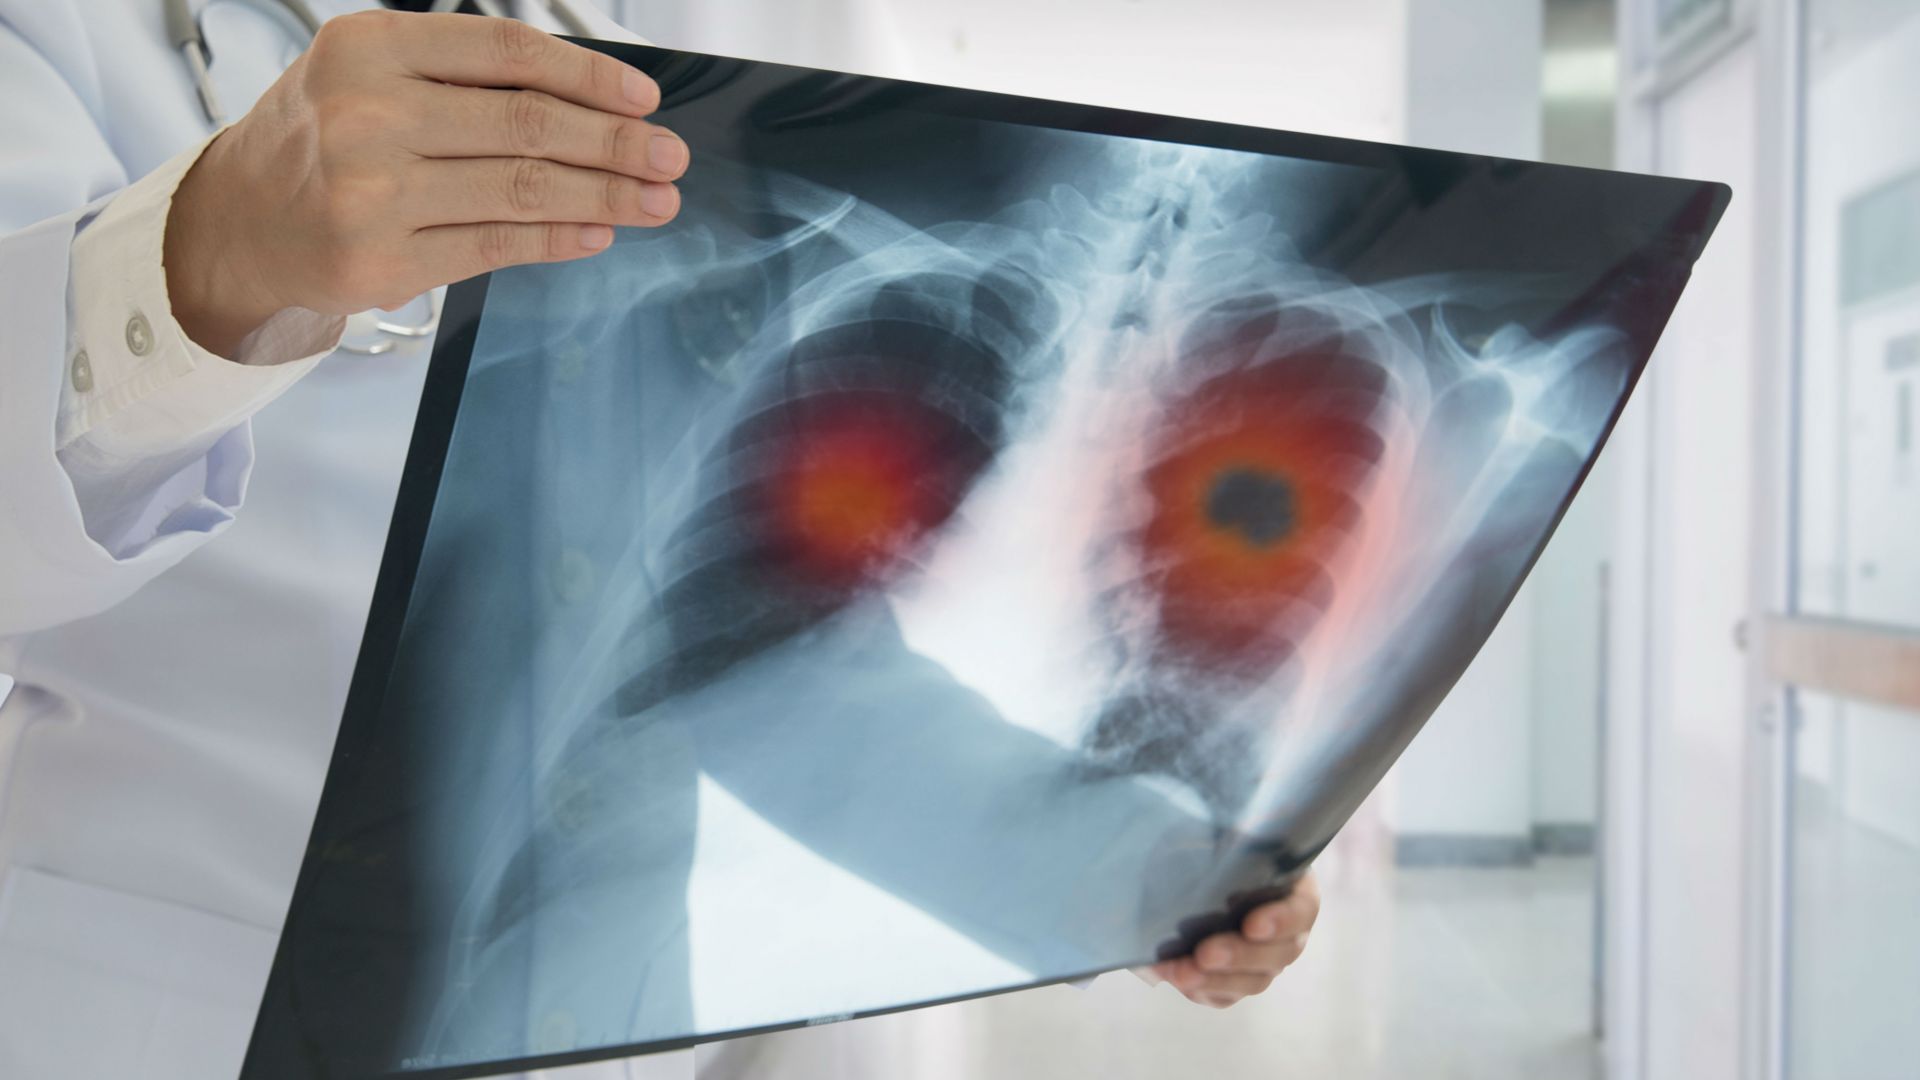 Rak płuc – skąd się bierze i jak mu przeciwdziałać?